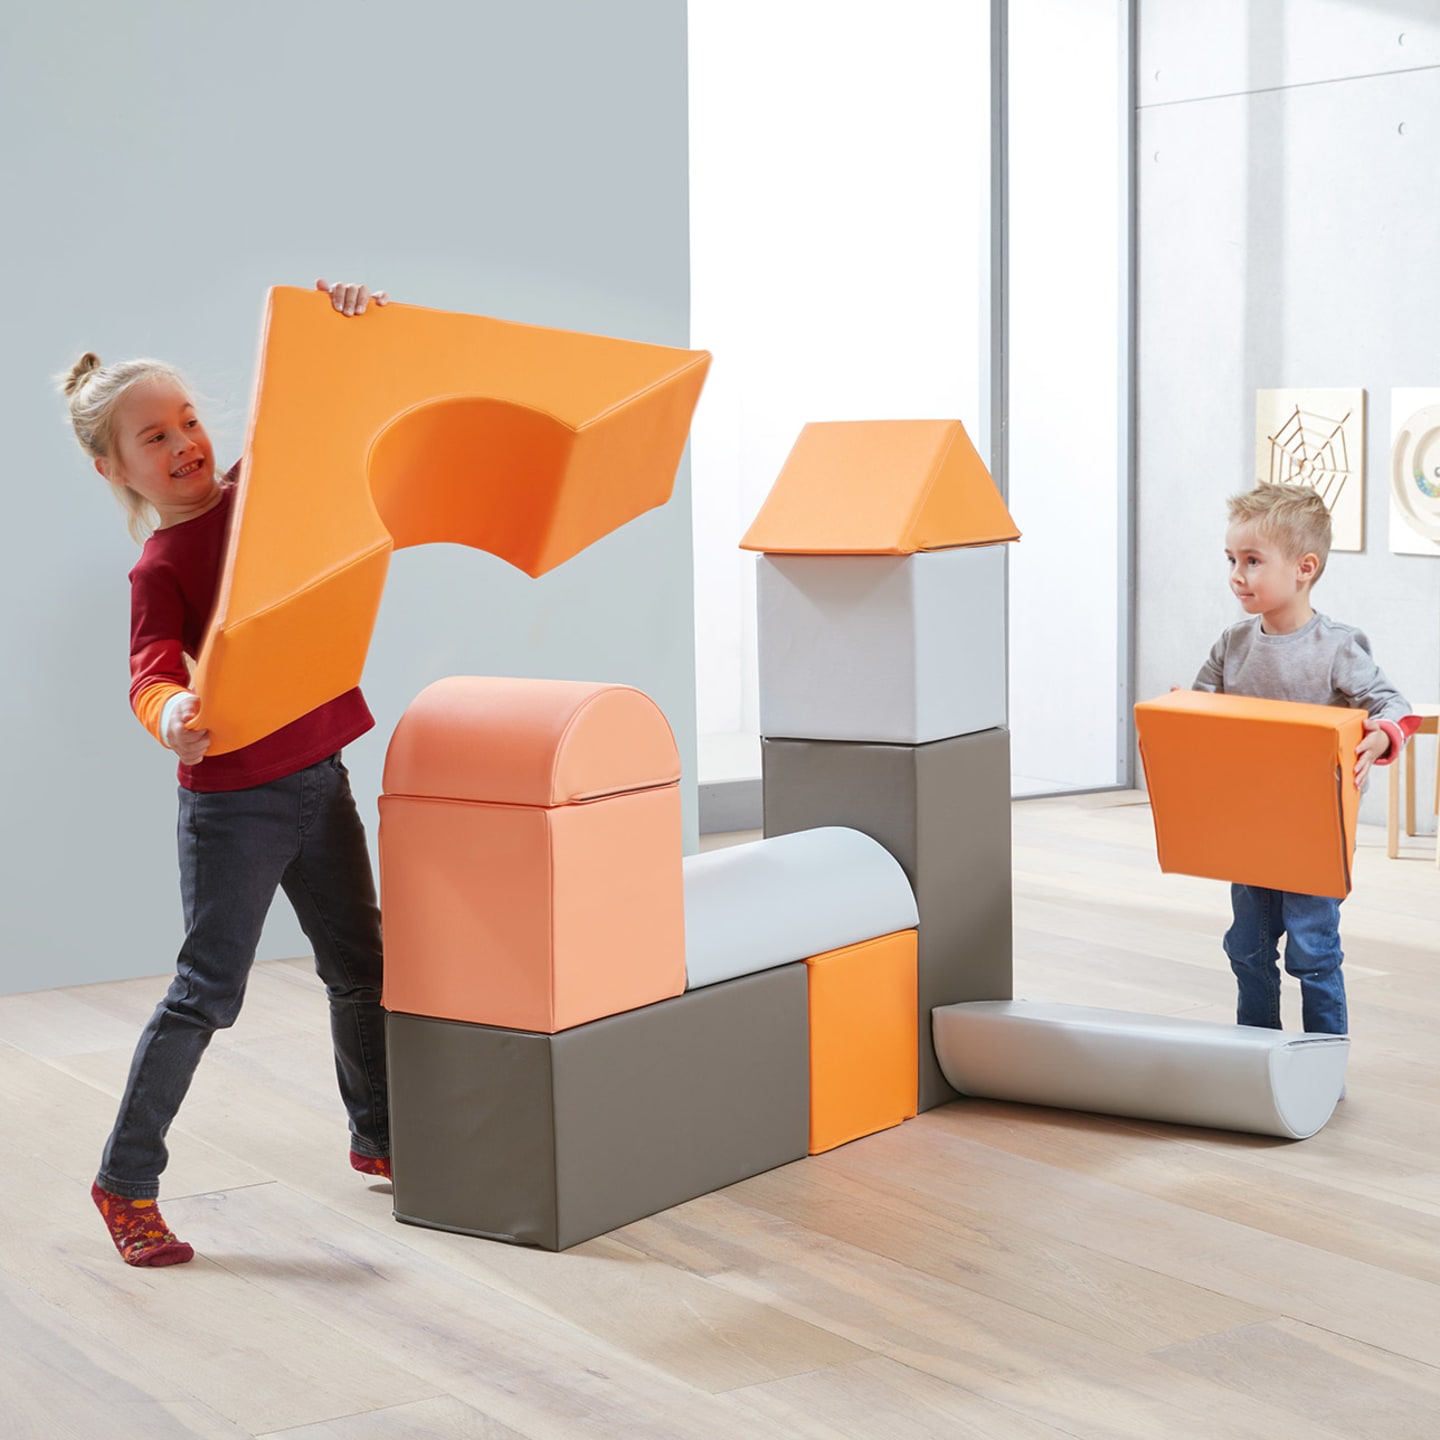 Indoor-Spielplatz | 4 | Bausteine-Set | Kinder spielen mit großen Bausteinen in Orange und grau